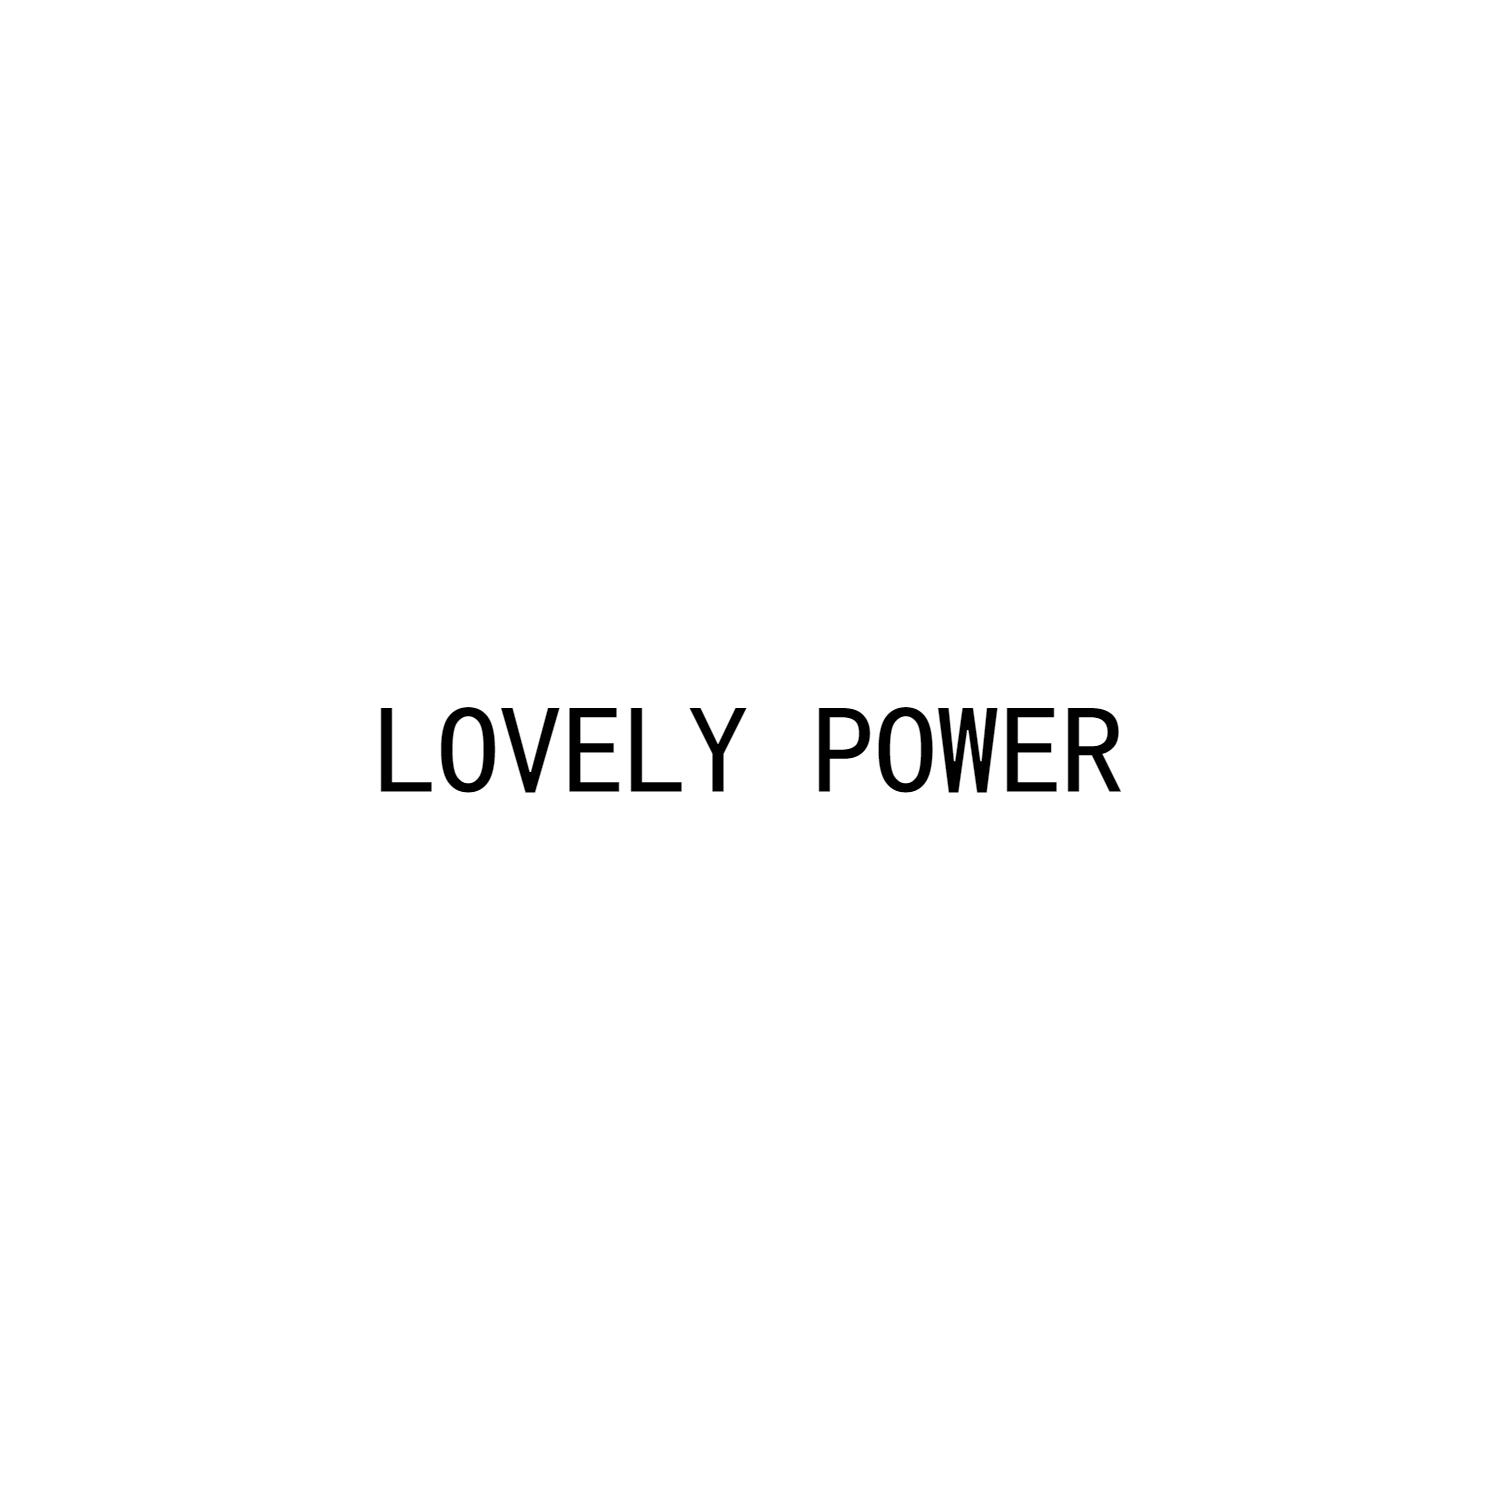 LOVELY POWER